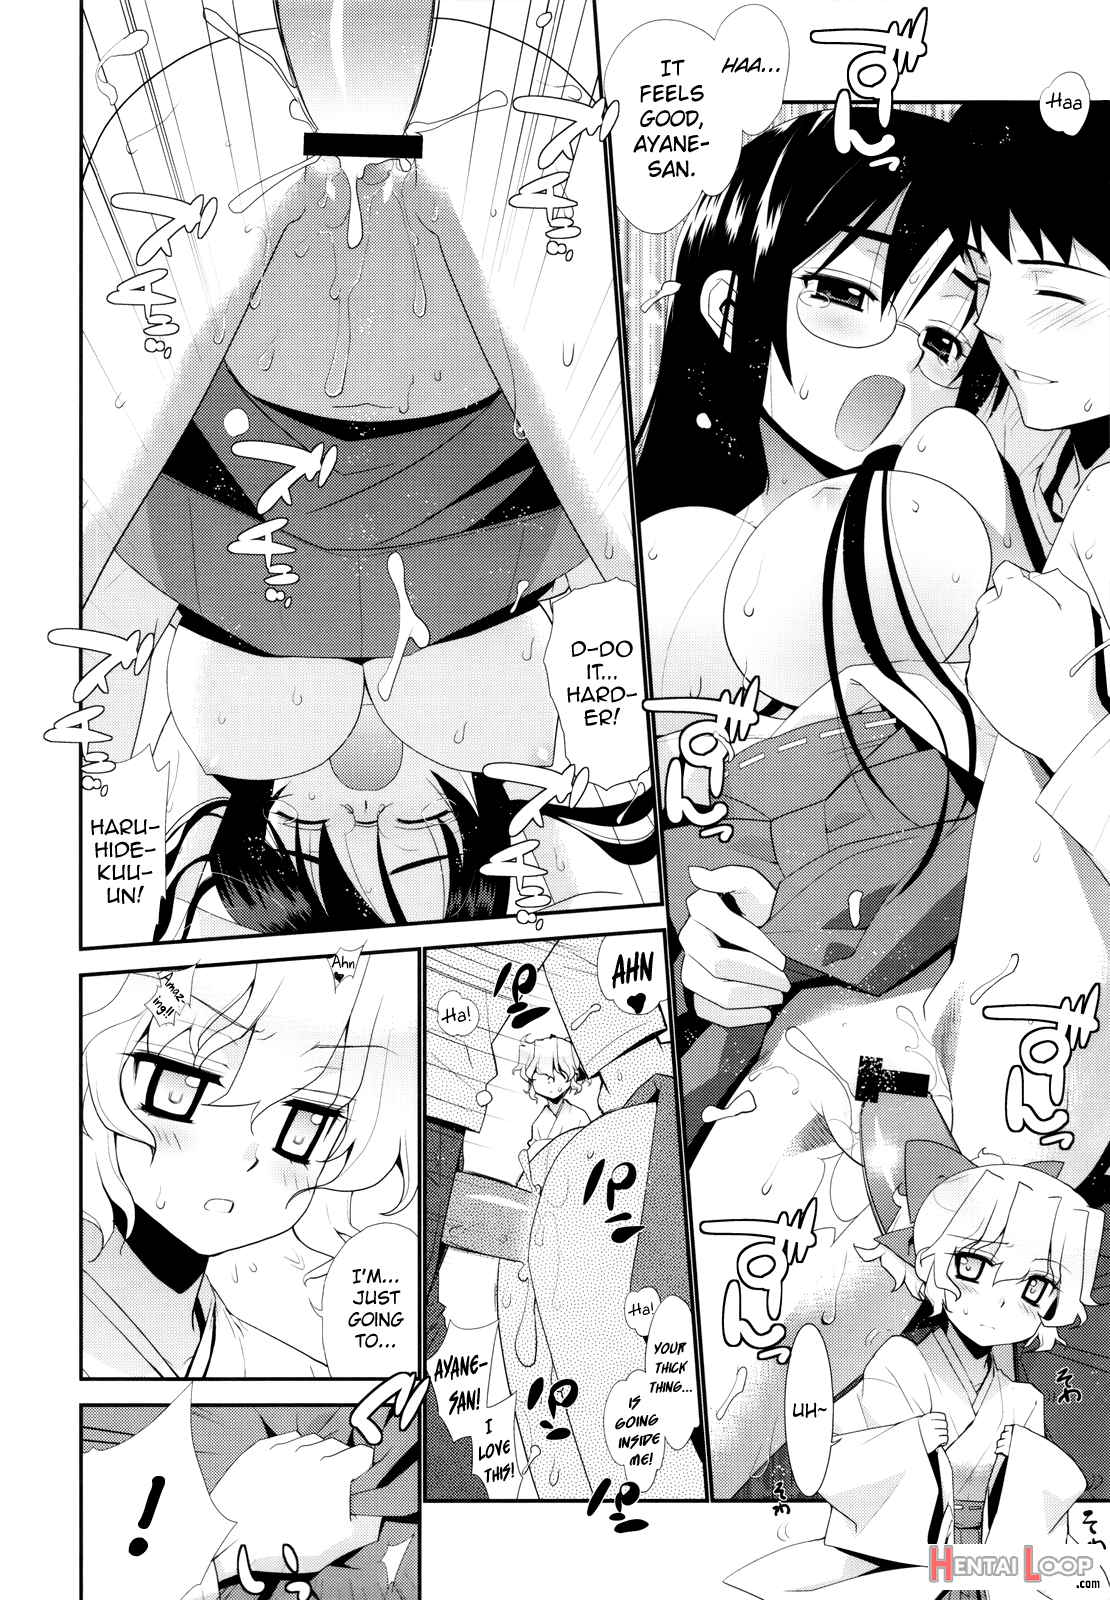 Kanara-sama No Nichijou San + Shiori page 10